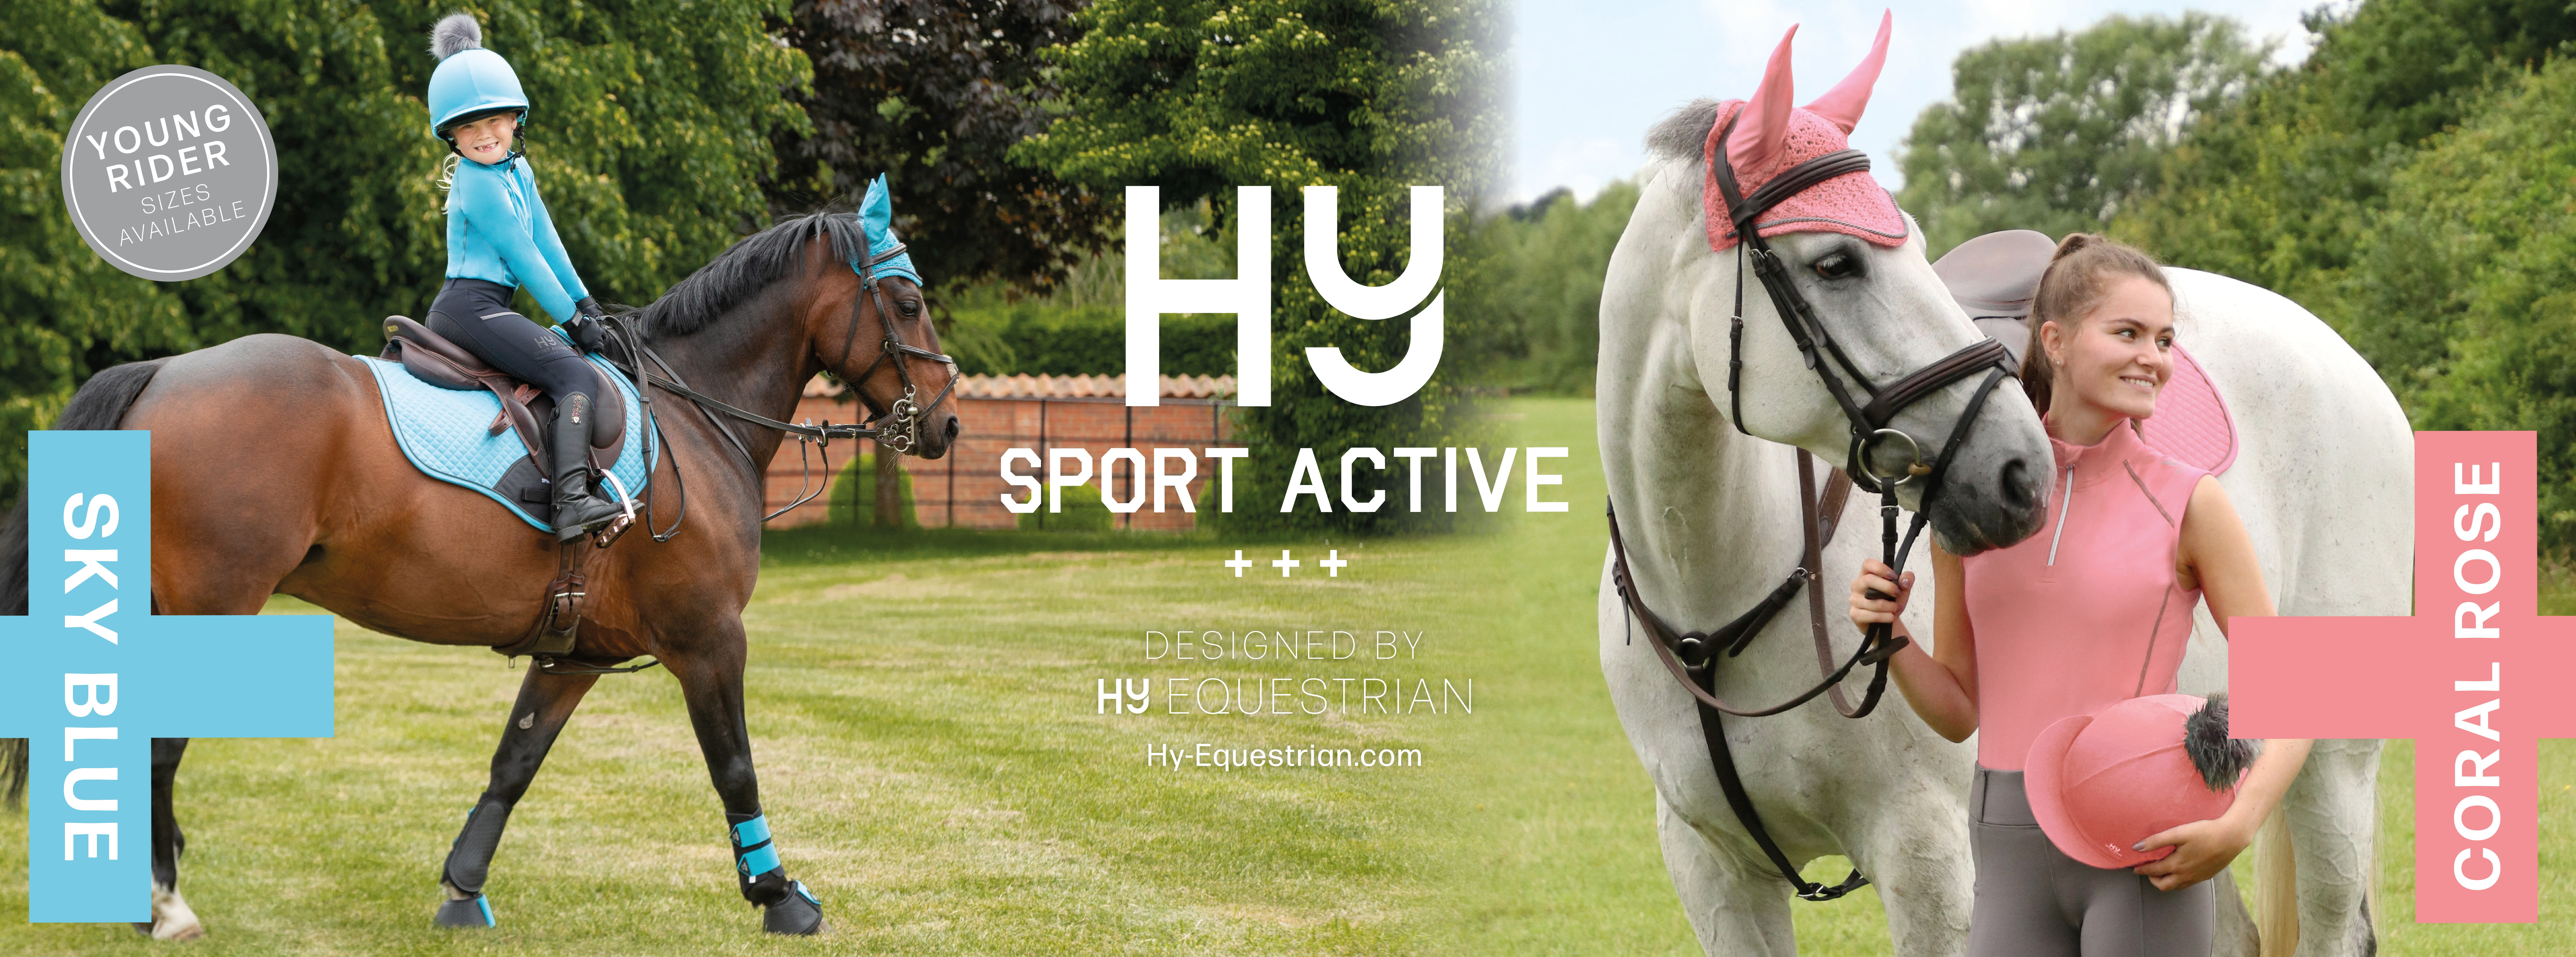 Hy Sport Active Banner - June 22